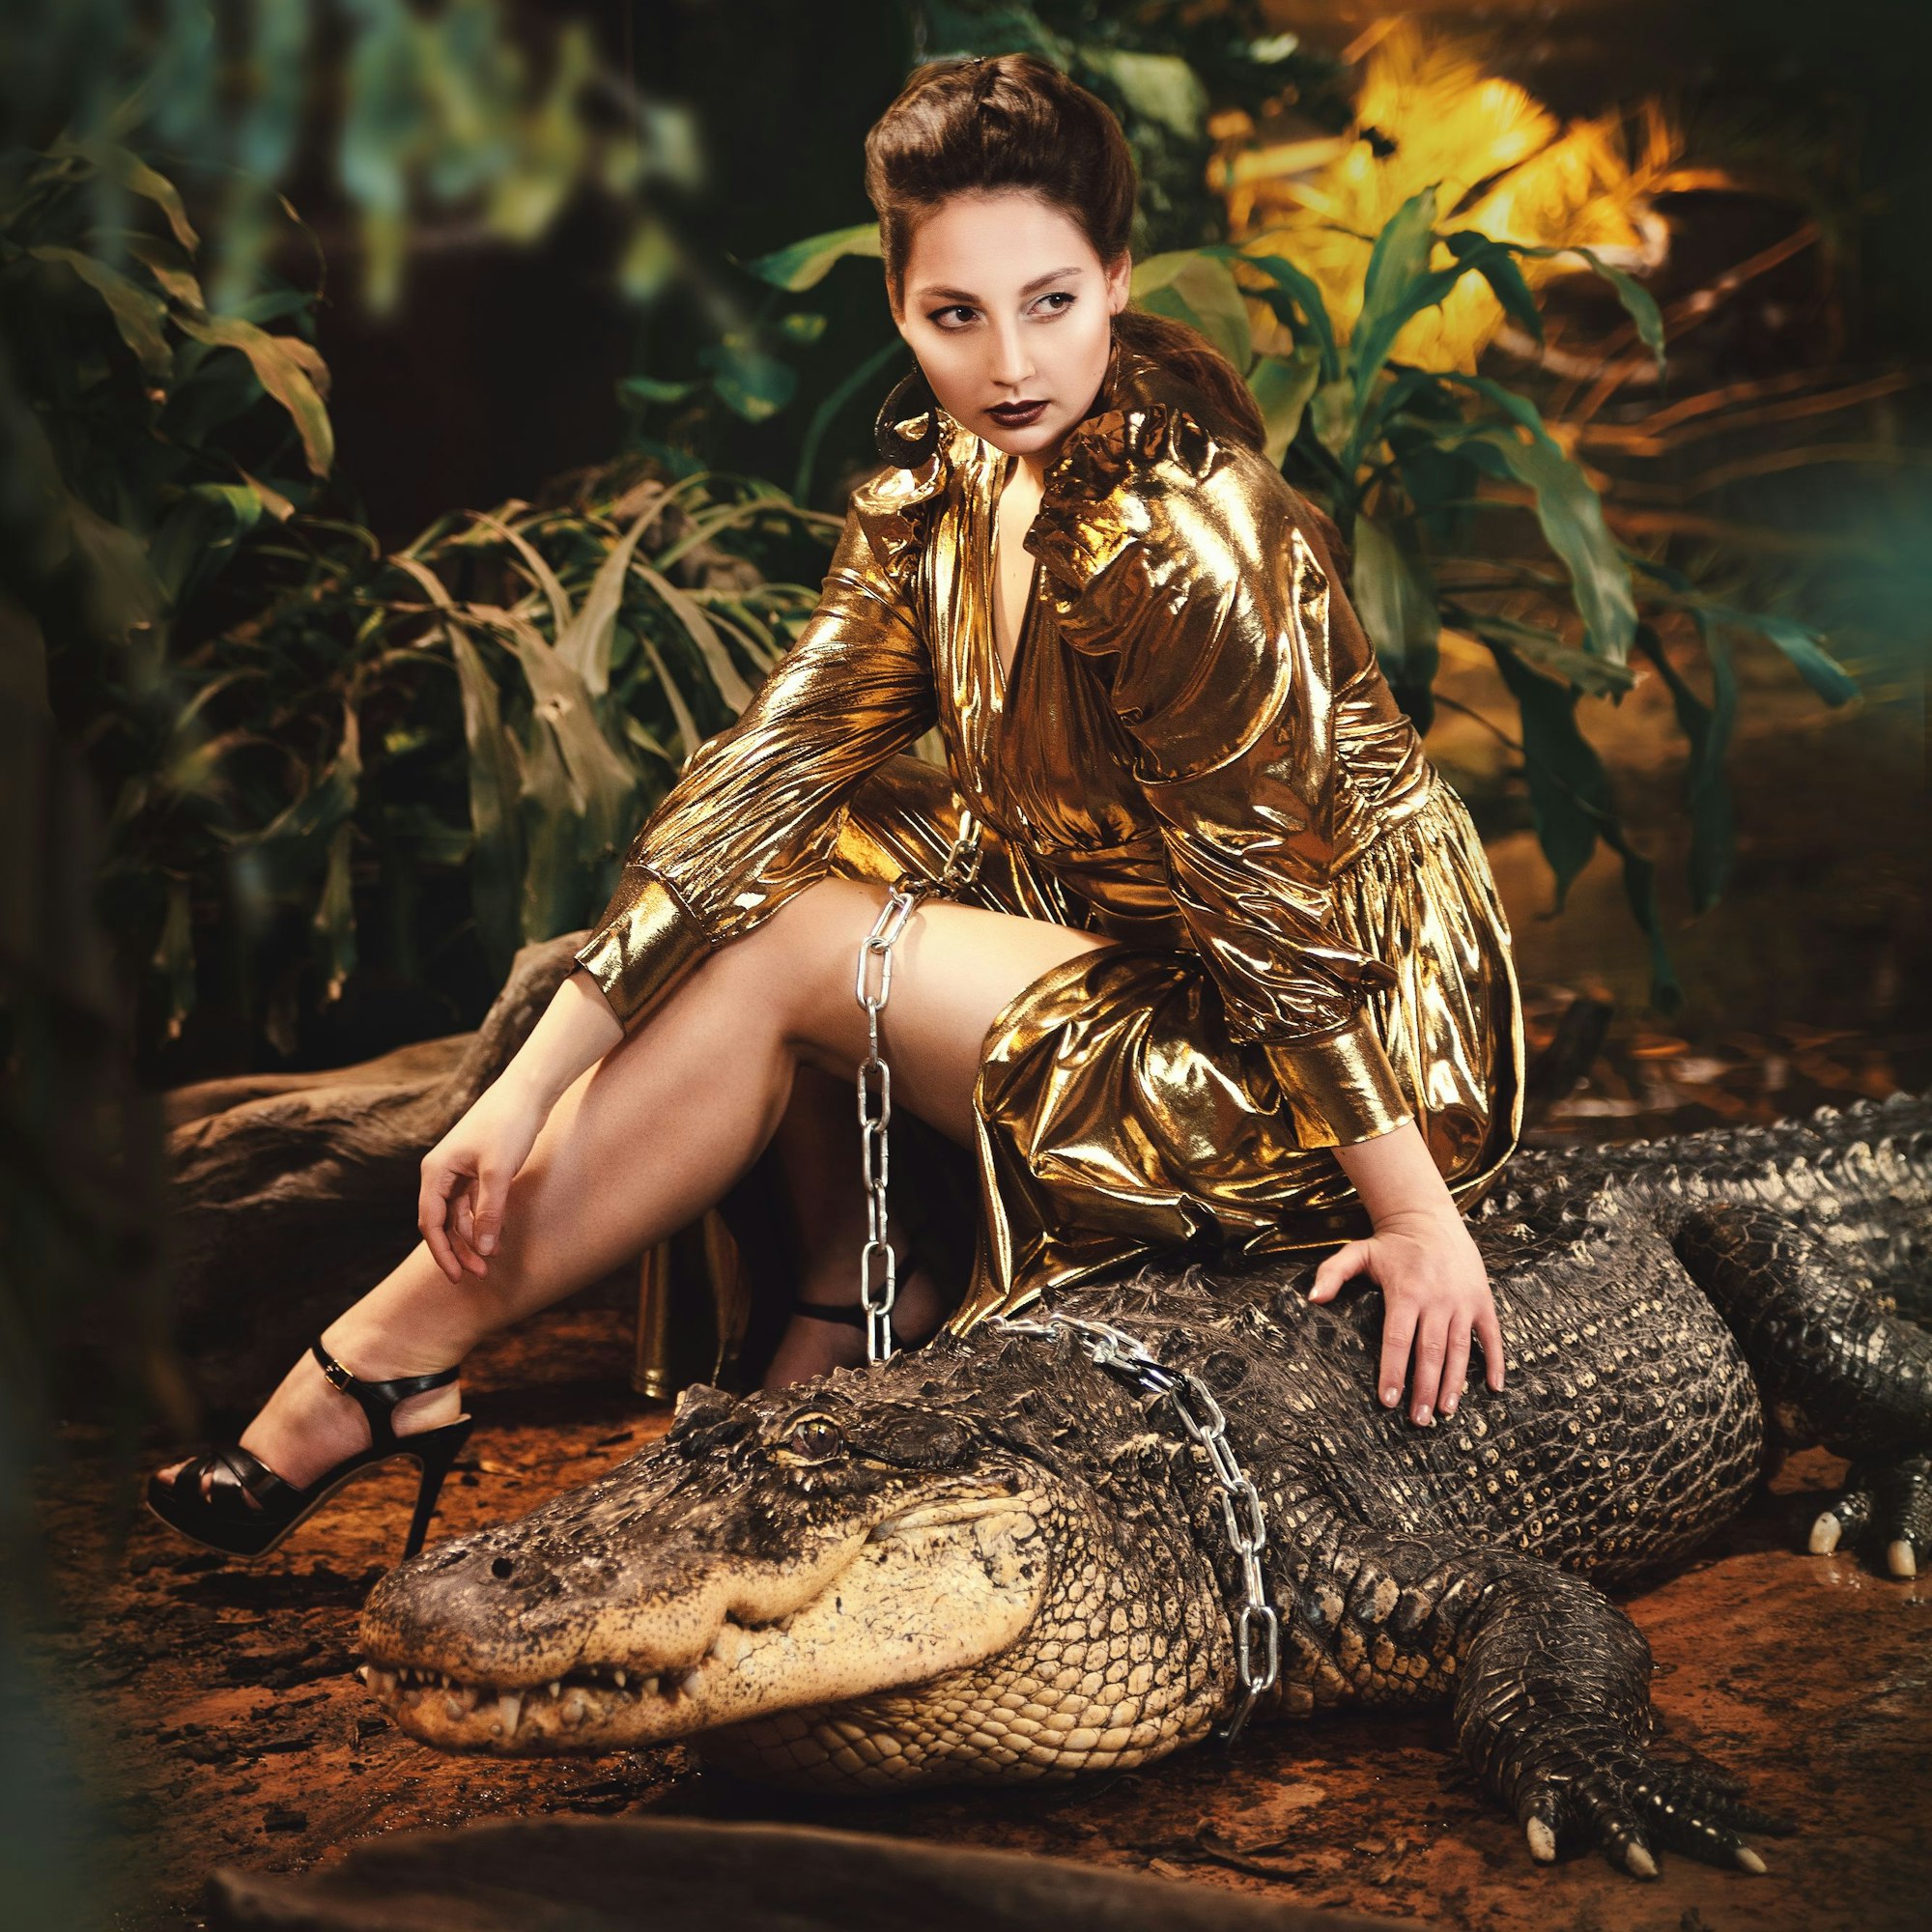 Julia Katharina Stark trägt ein goldenes Kleid und posiert mit einem Krokodil, um das eine Kette wie eine Leine gelegt ist.